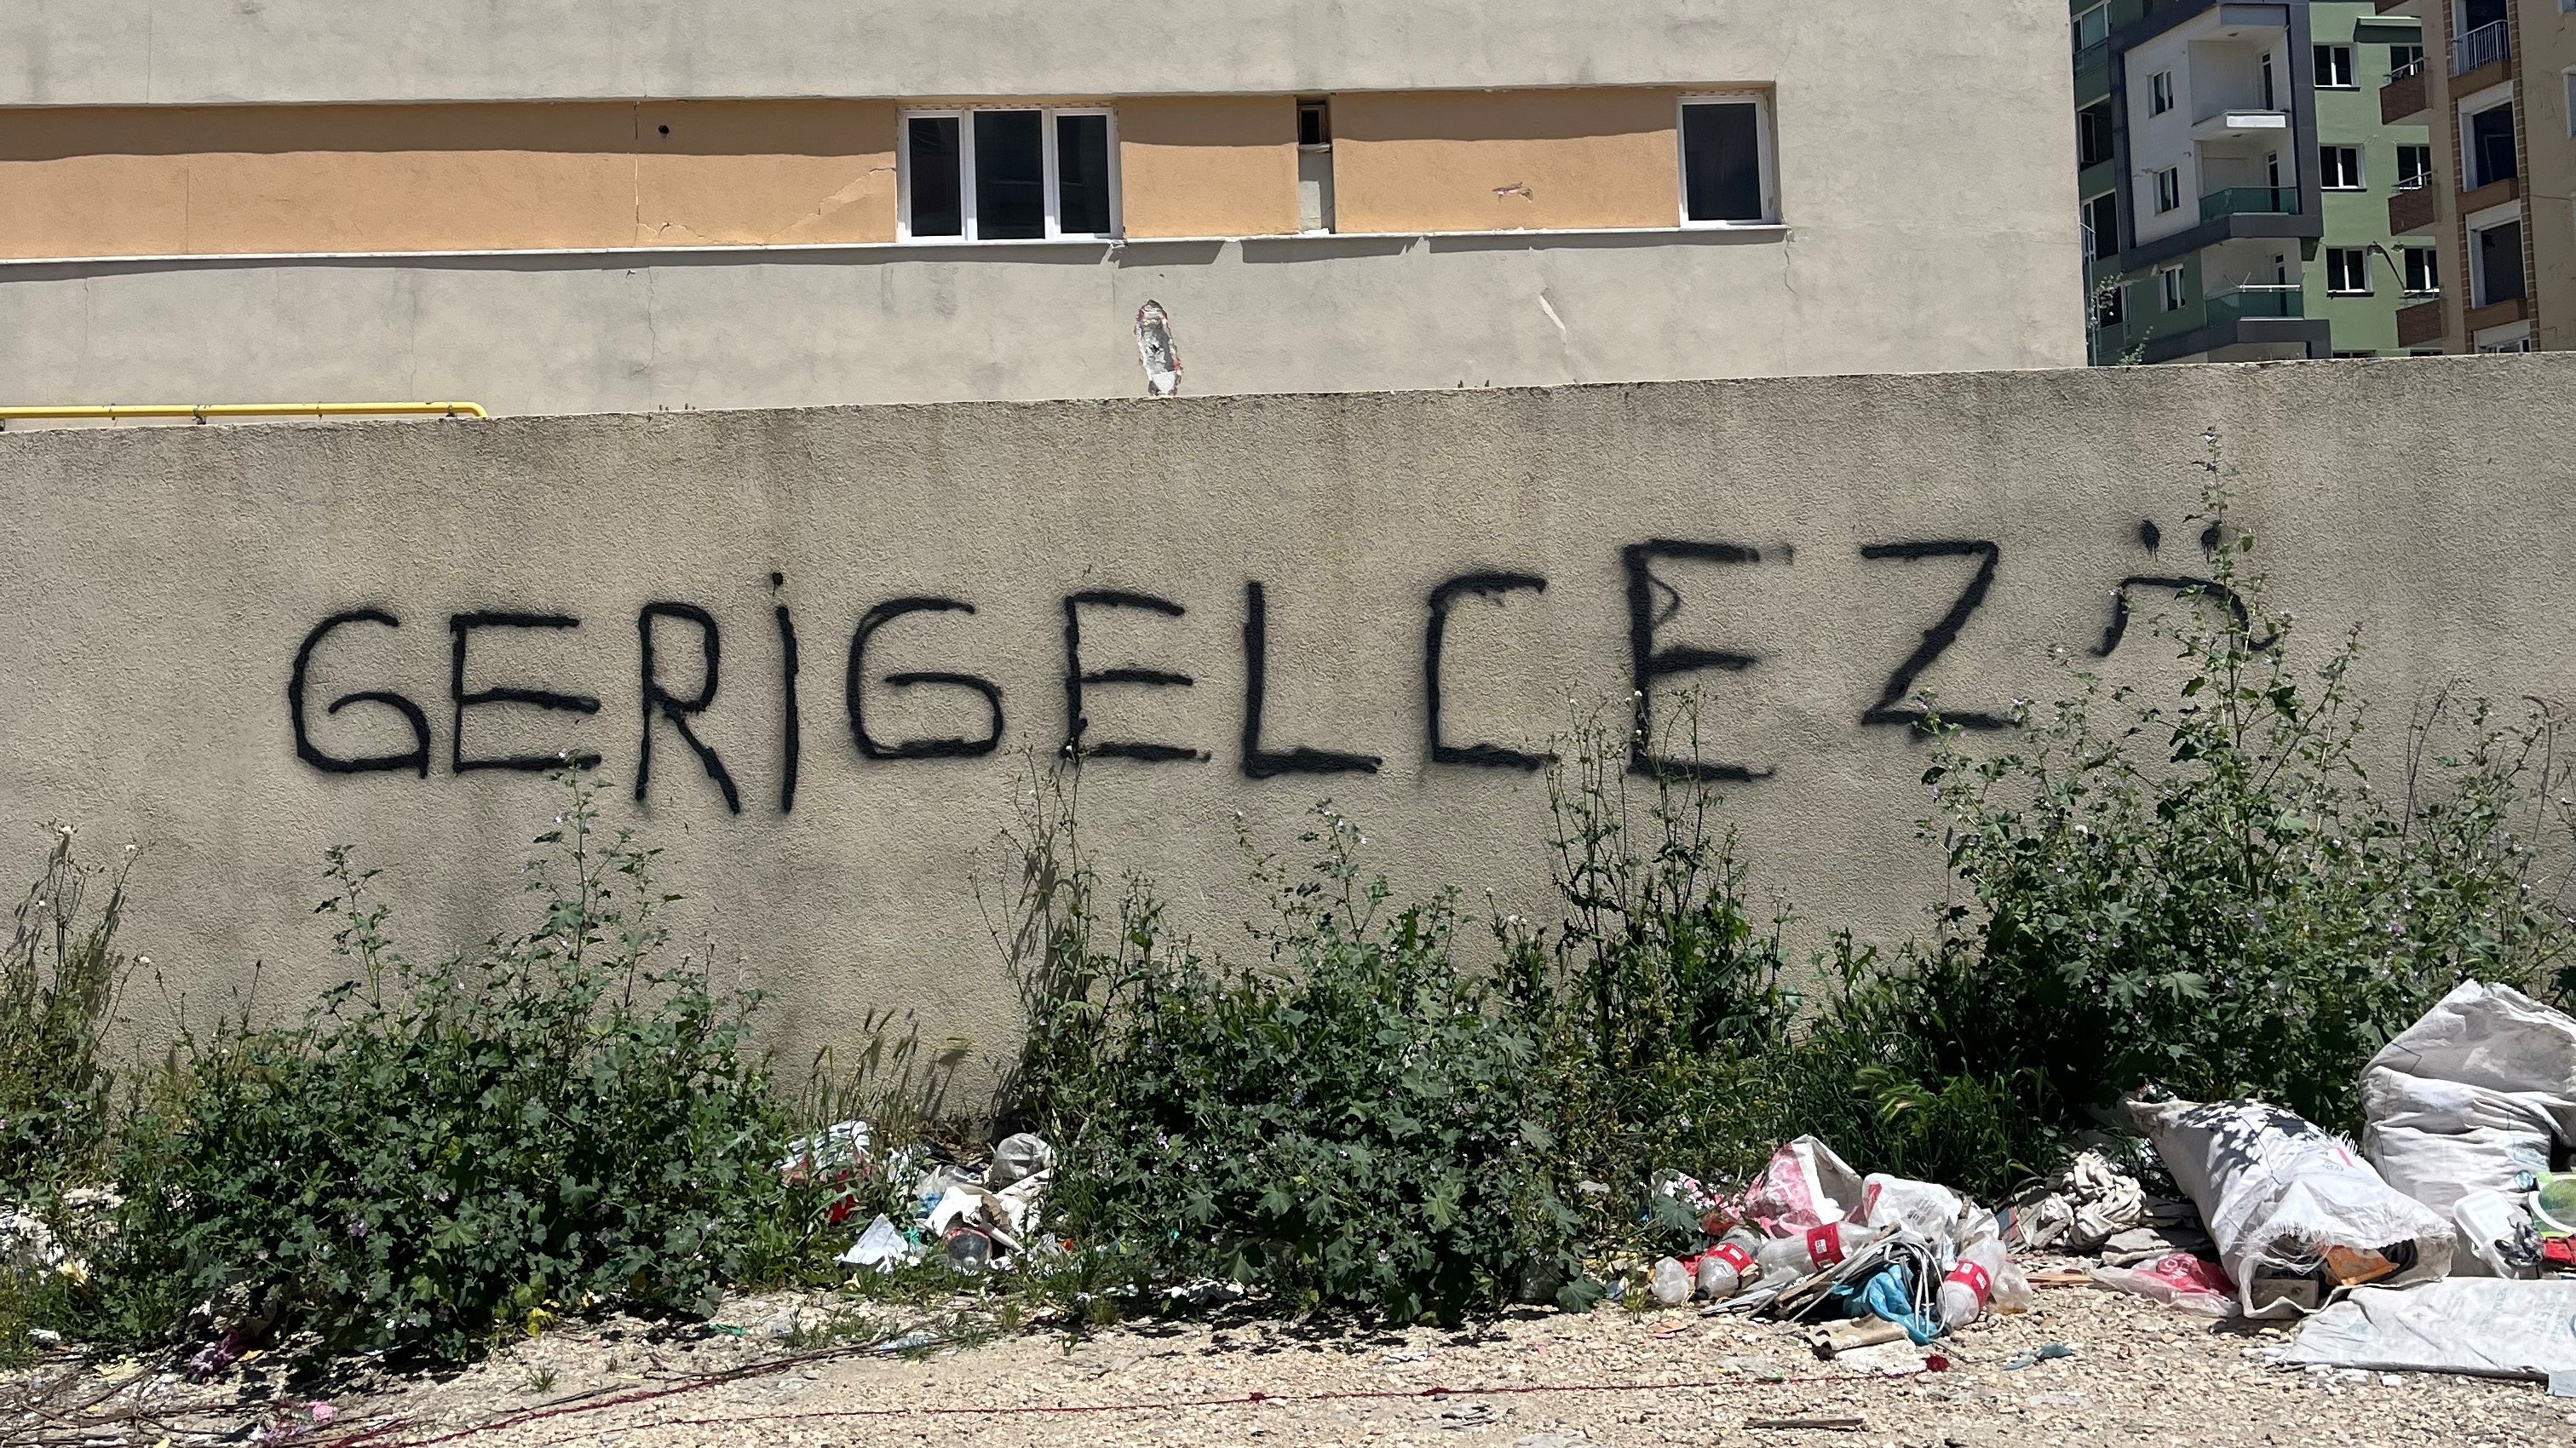 سكان أنطاكية مصمّمون على إعادة بناء مدينتهم والعودة إليها. Graffiti reading "We will come back" on a wall in Antakya, Turkey (photo: Alperen Kul)